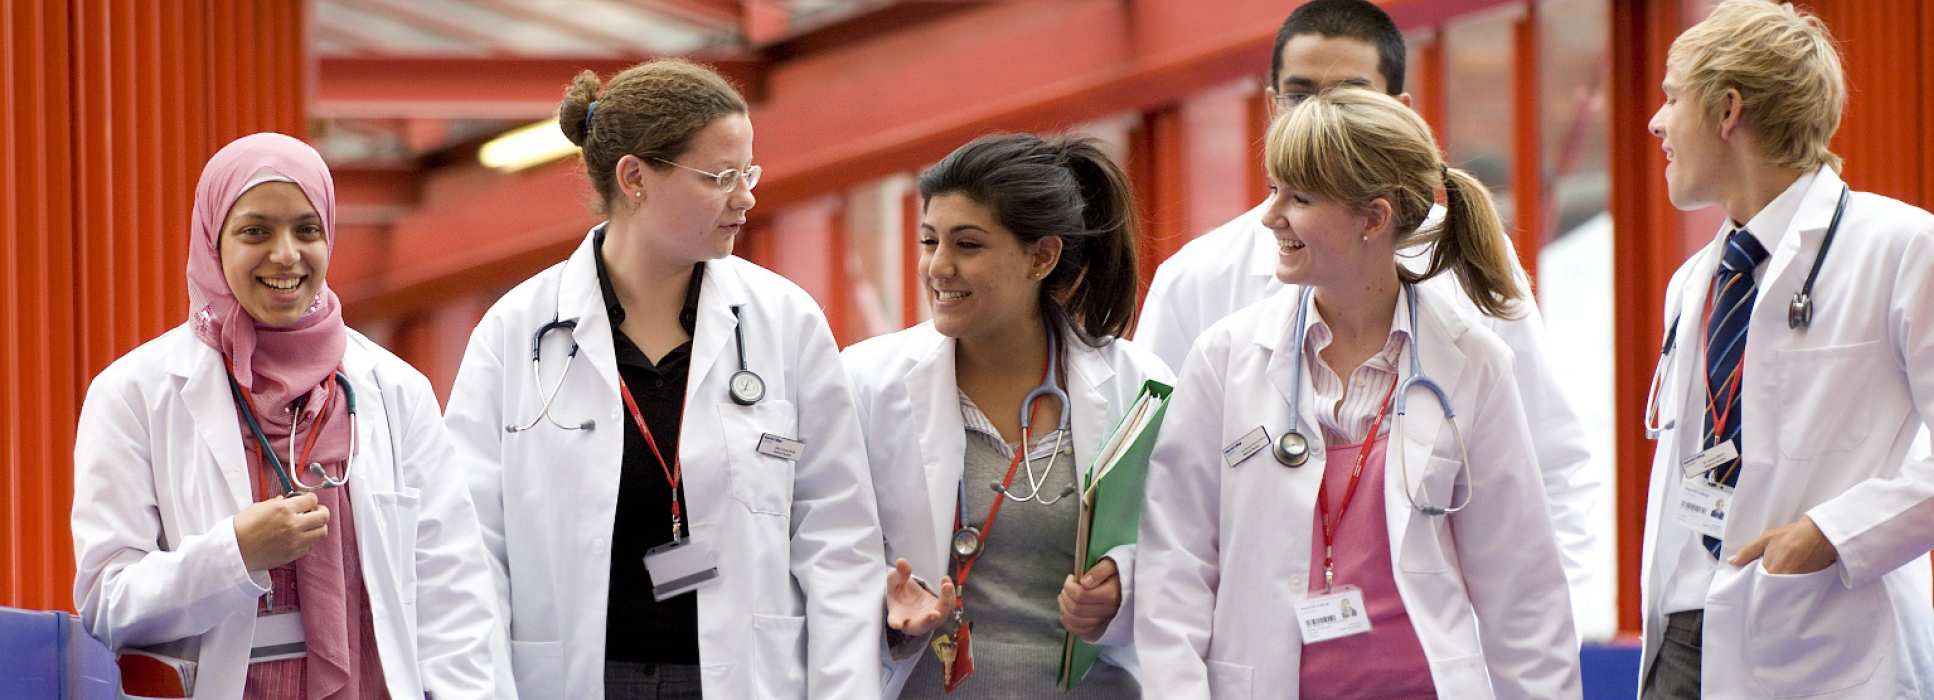 ONCAMPUS UK North Medicine Students